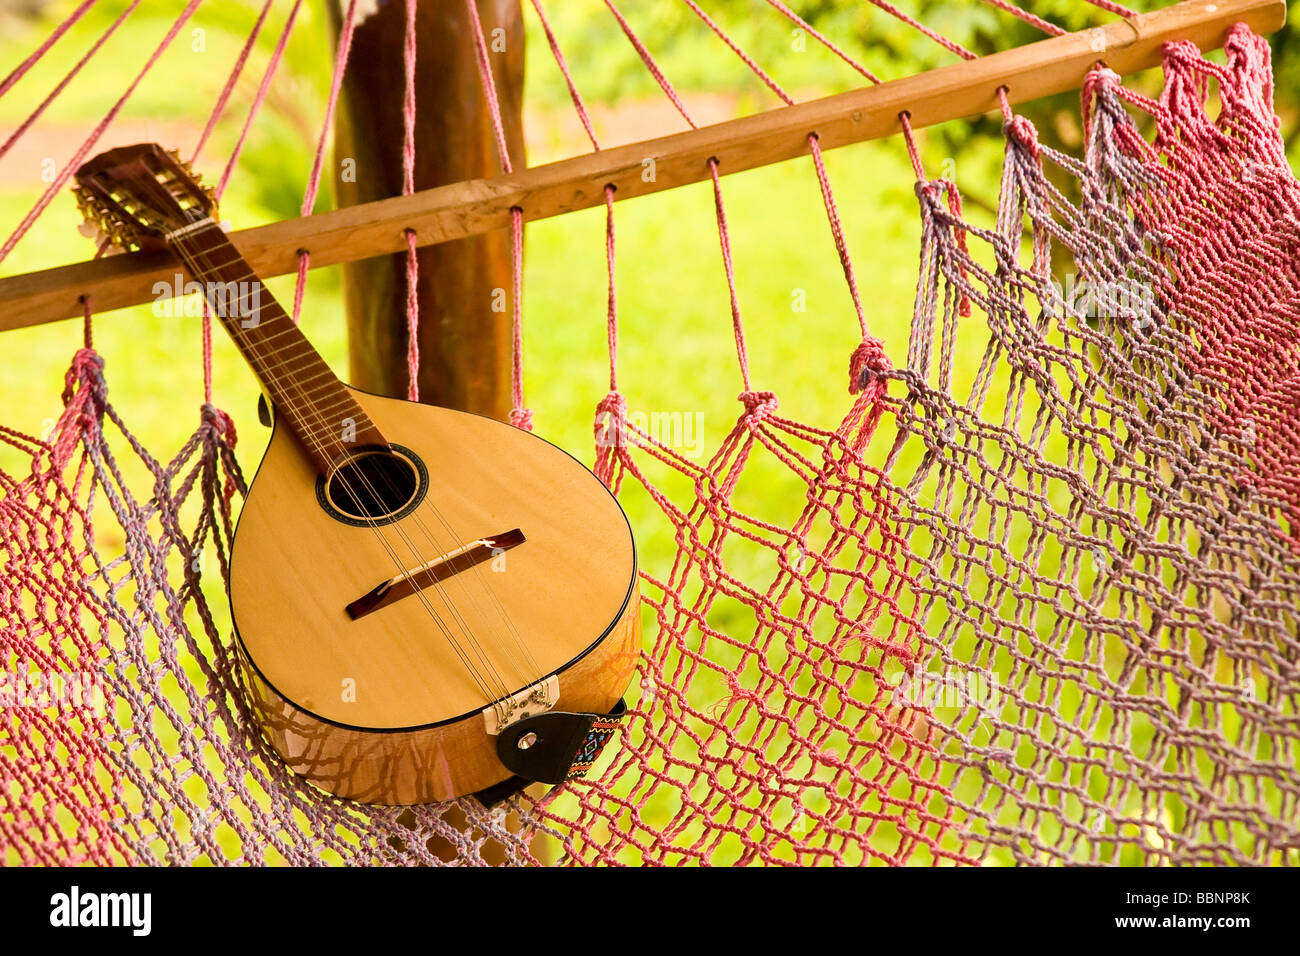 mandolin on a hammock Stock Photo